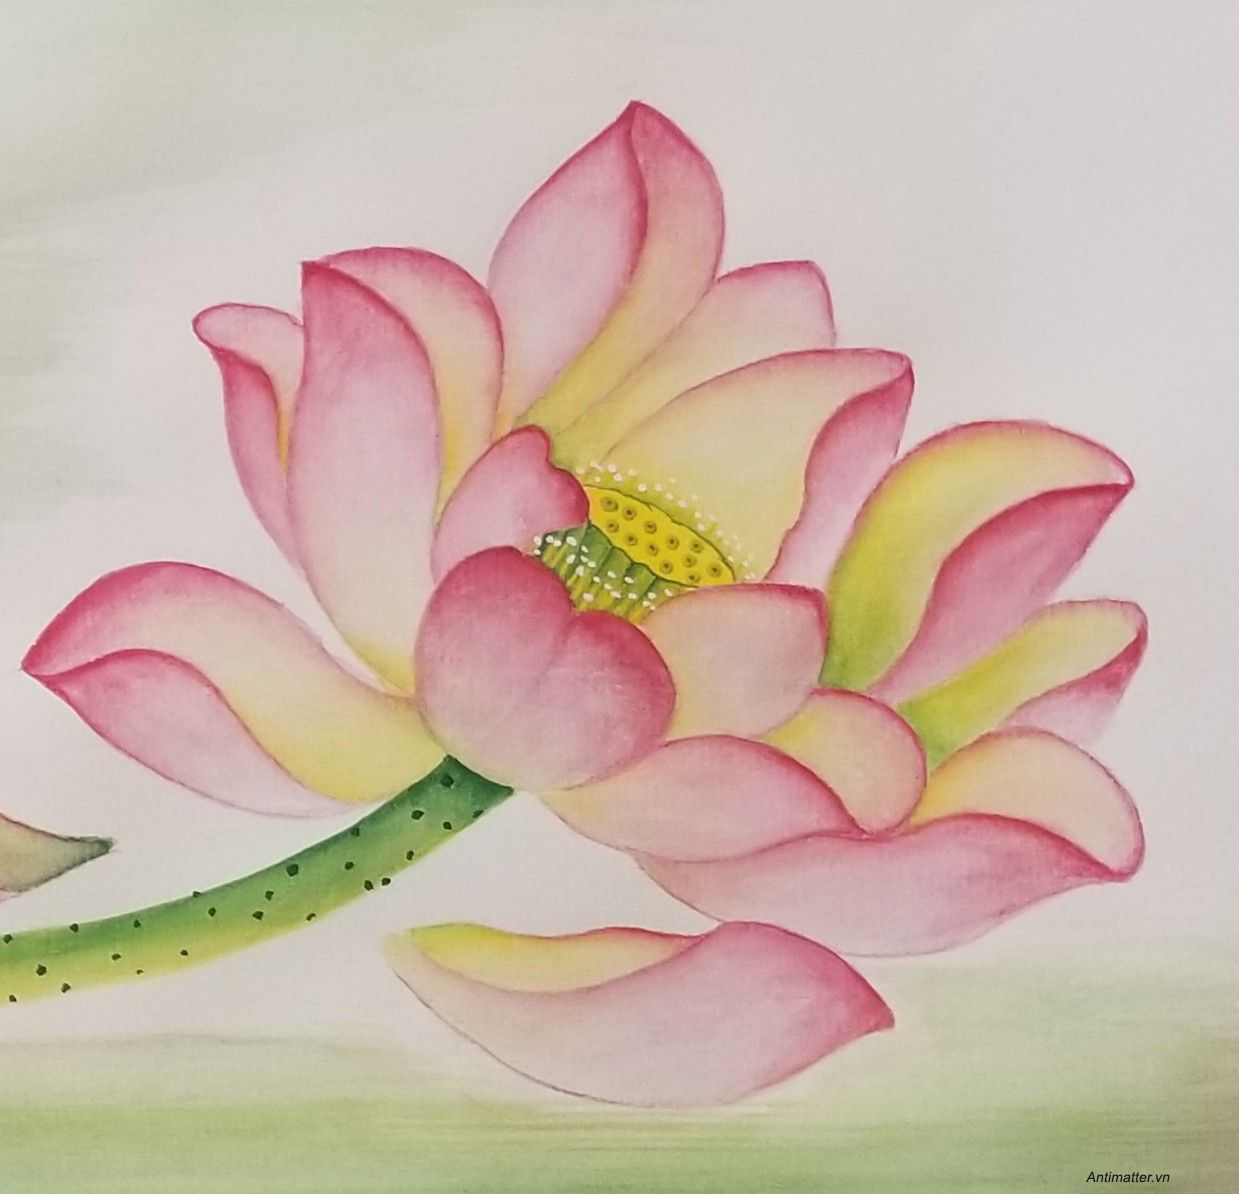 Tìm hiểu hơn 102 hoa sen hình vẽ hay nhất  Tin Học Vui